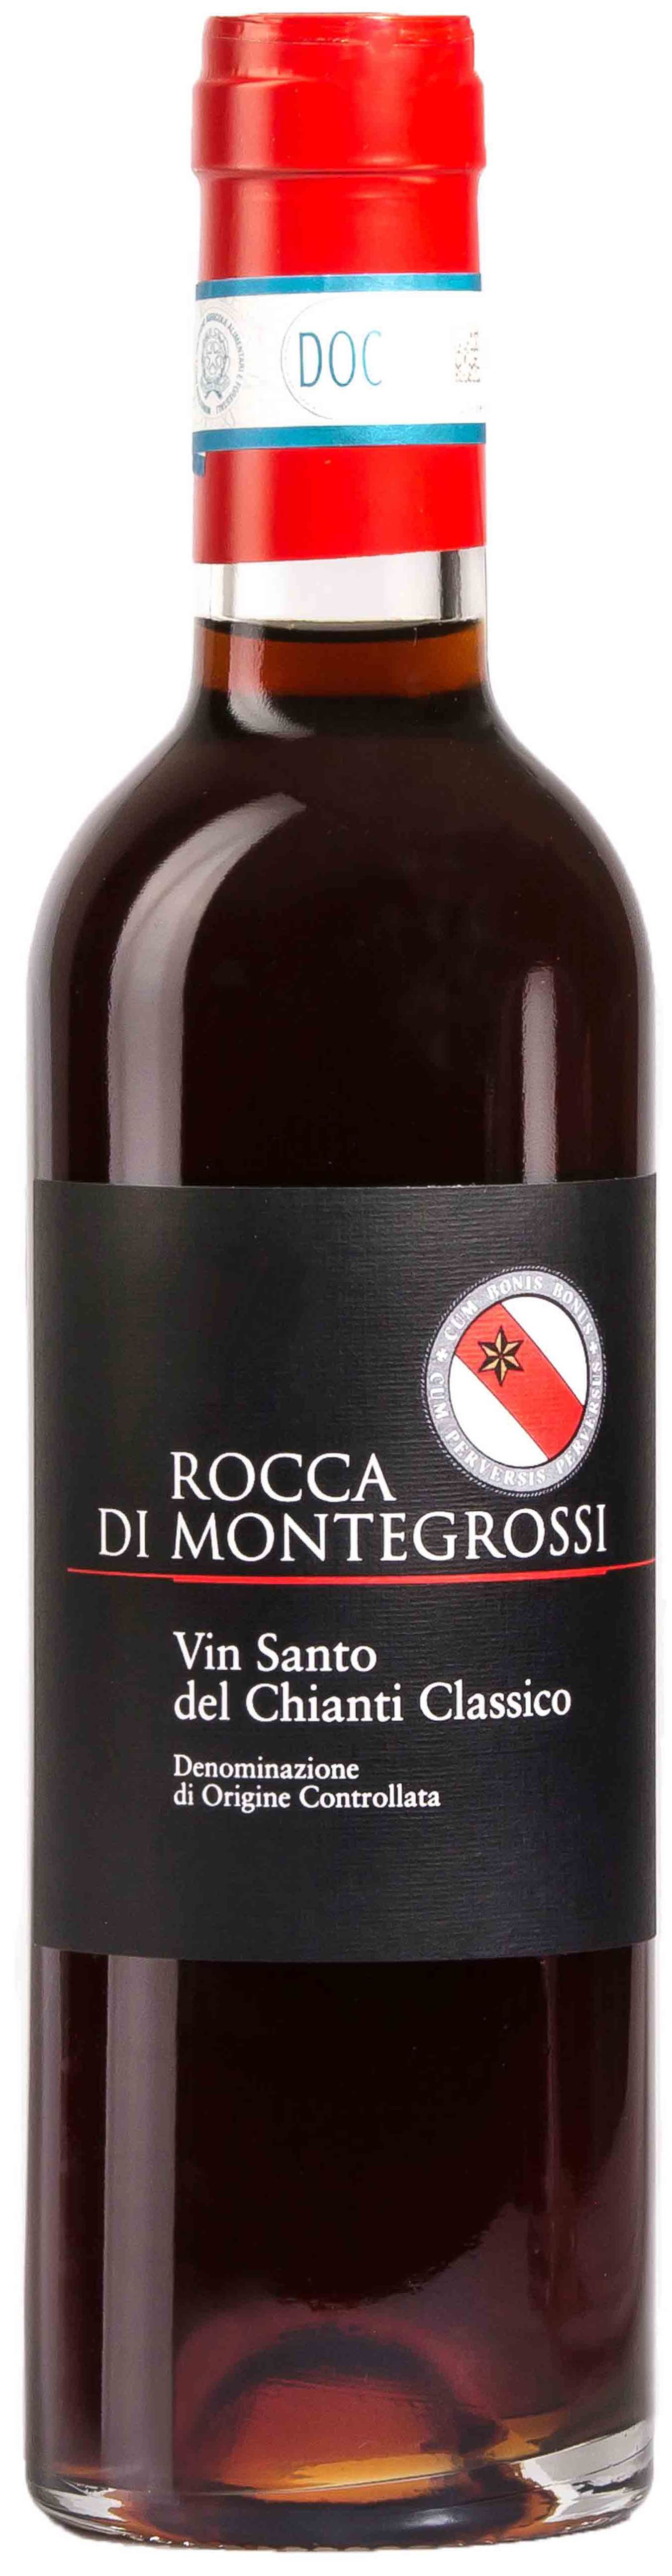 Rocca Di Montegrossi, Vin Santo Del Chianti Classico, 2000